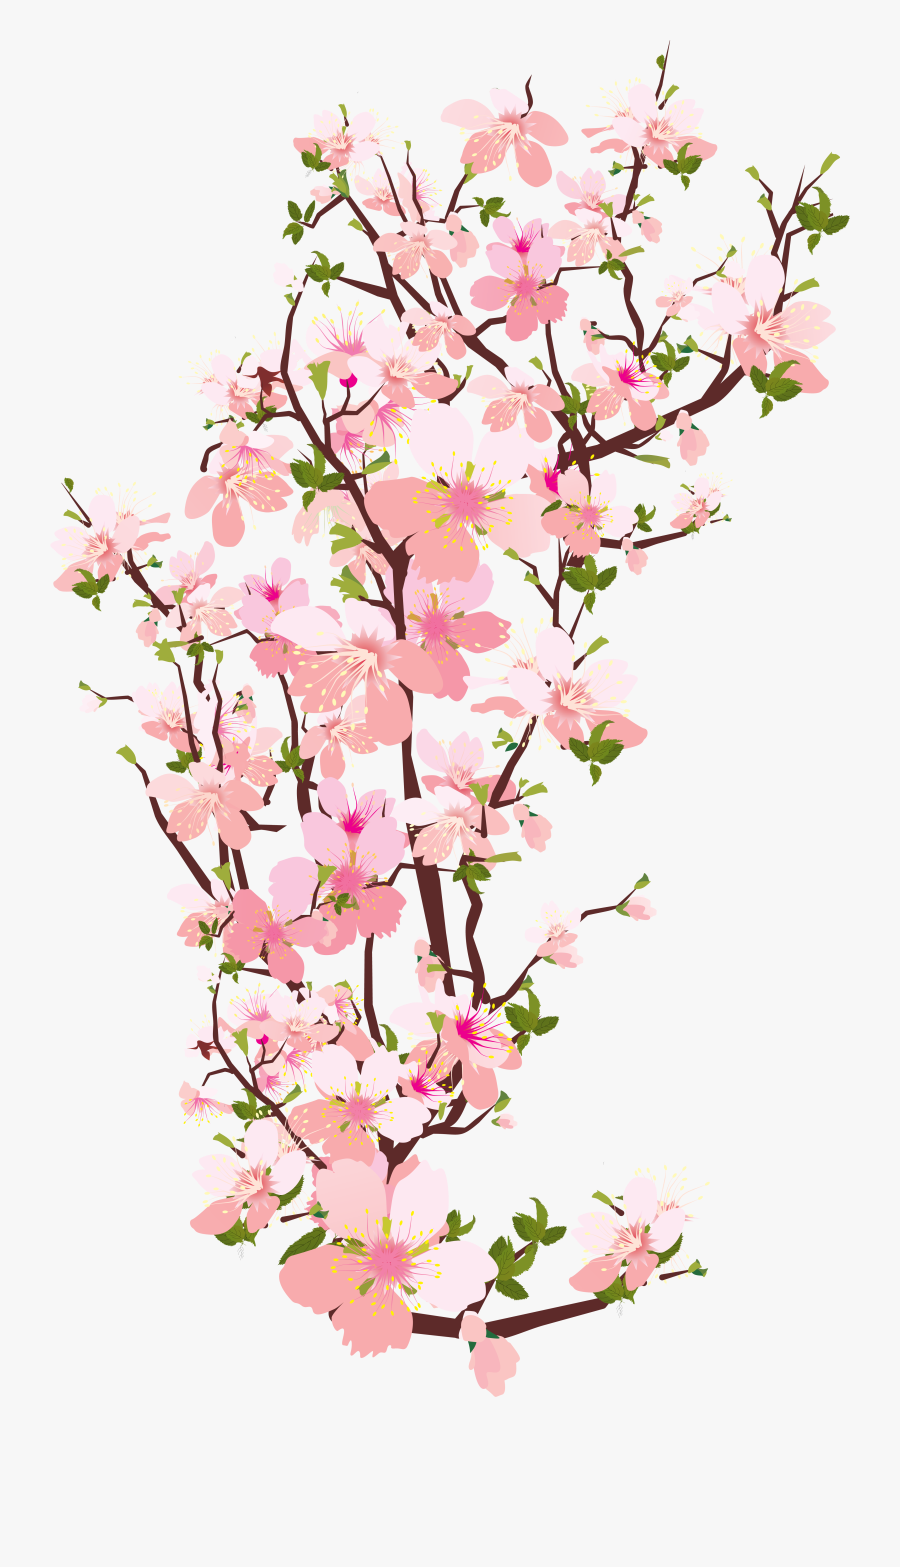 Blossom Photo Transparentpng - Transparent Cherry Blossoms Clipart, Transparent Clipart